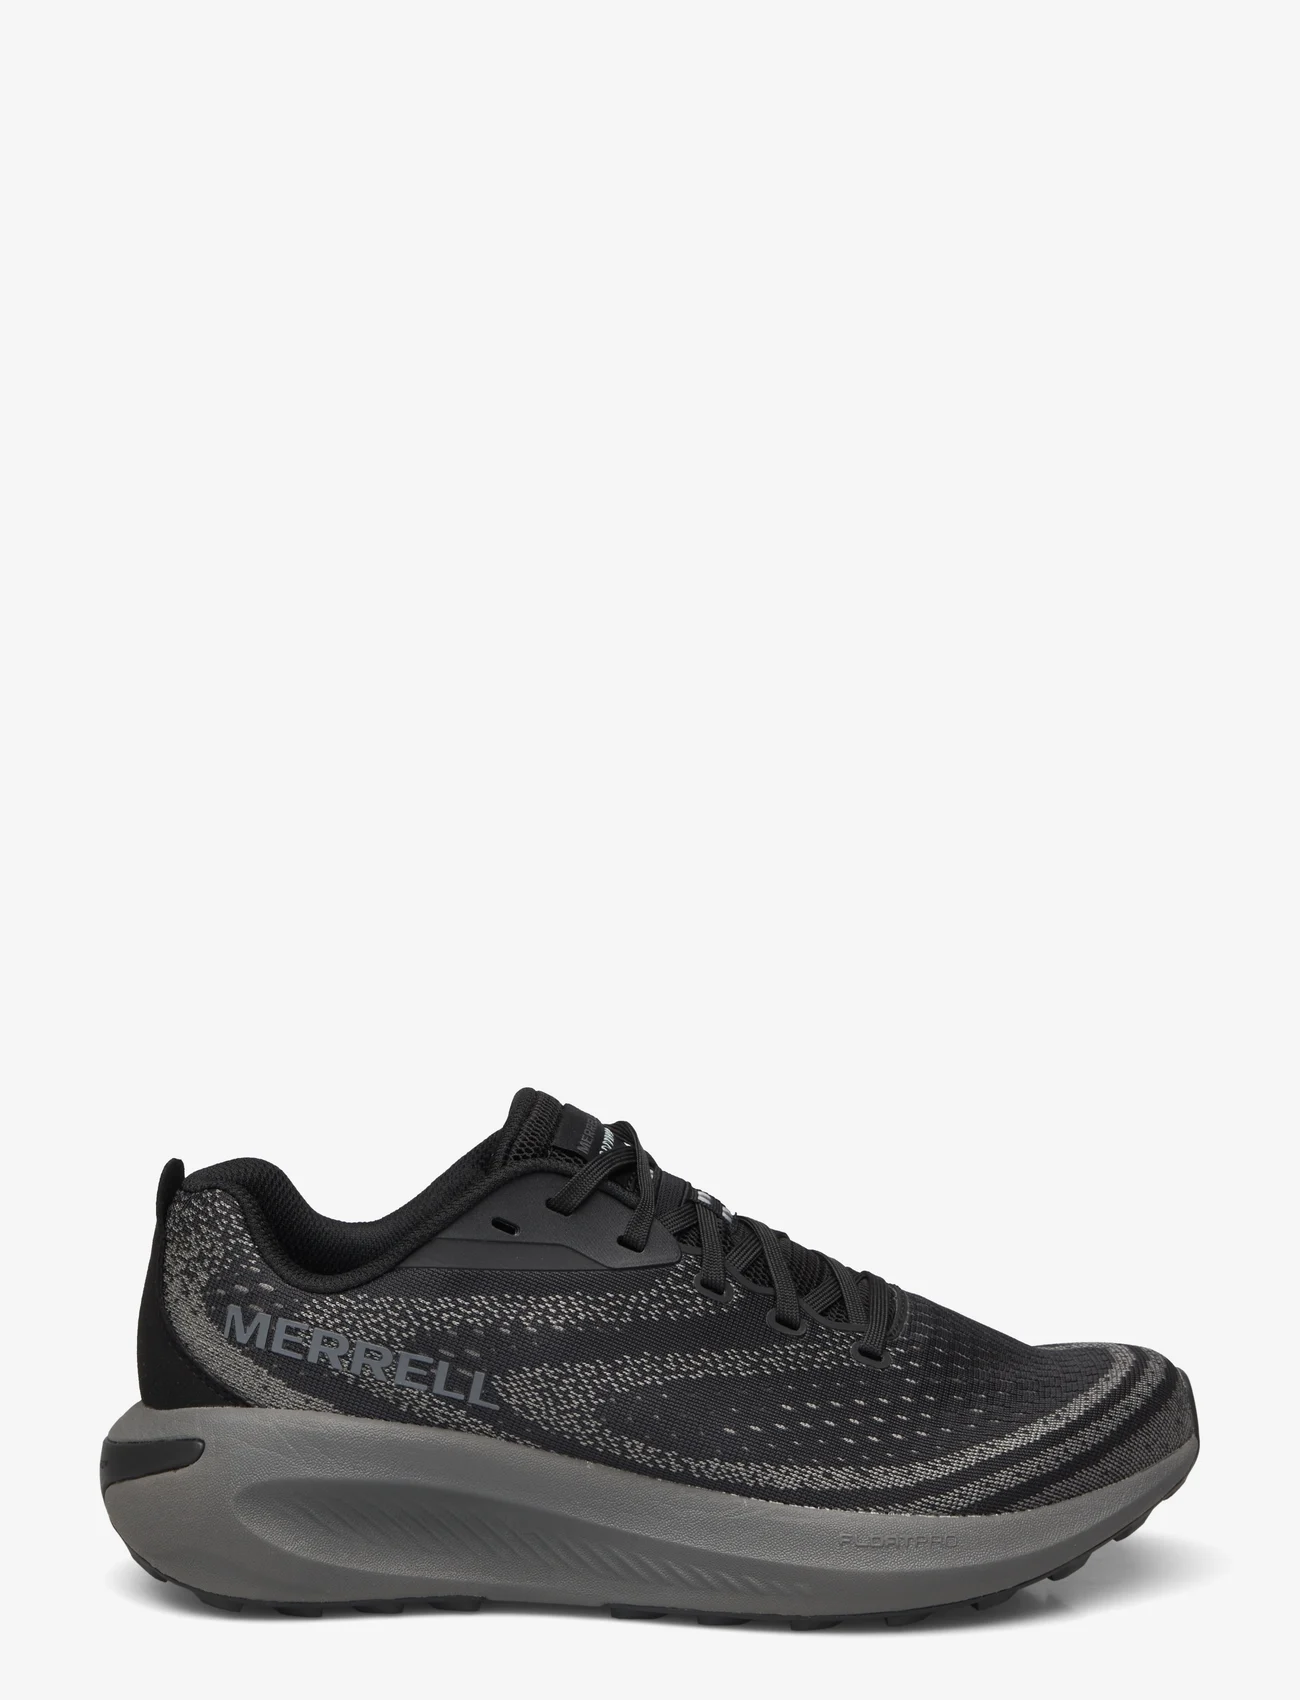 Merrell - Men's Morphlite - Black/Asphalt - running shoes - black/asphalt - 1